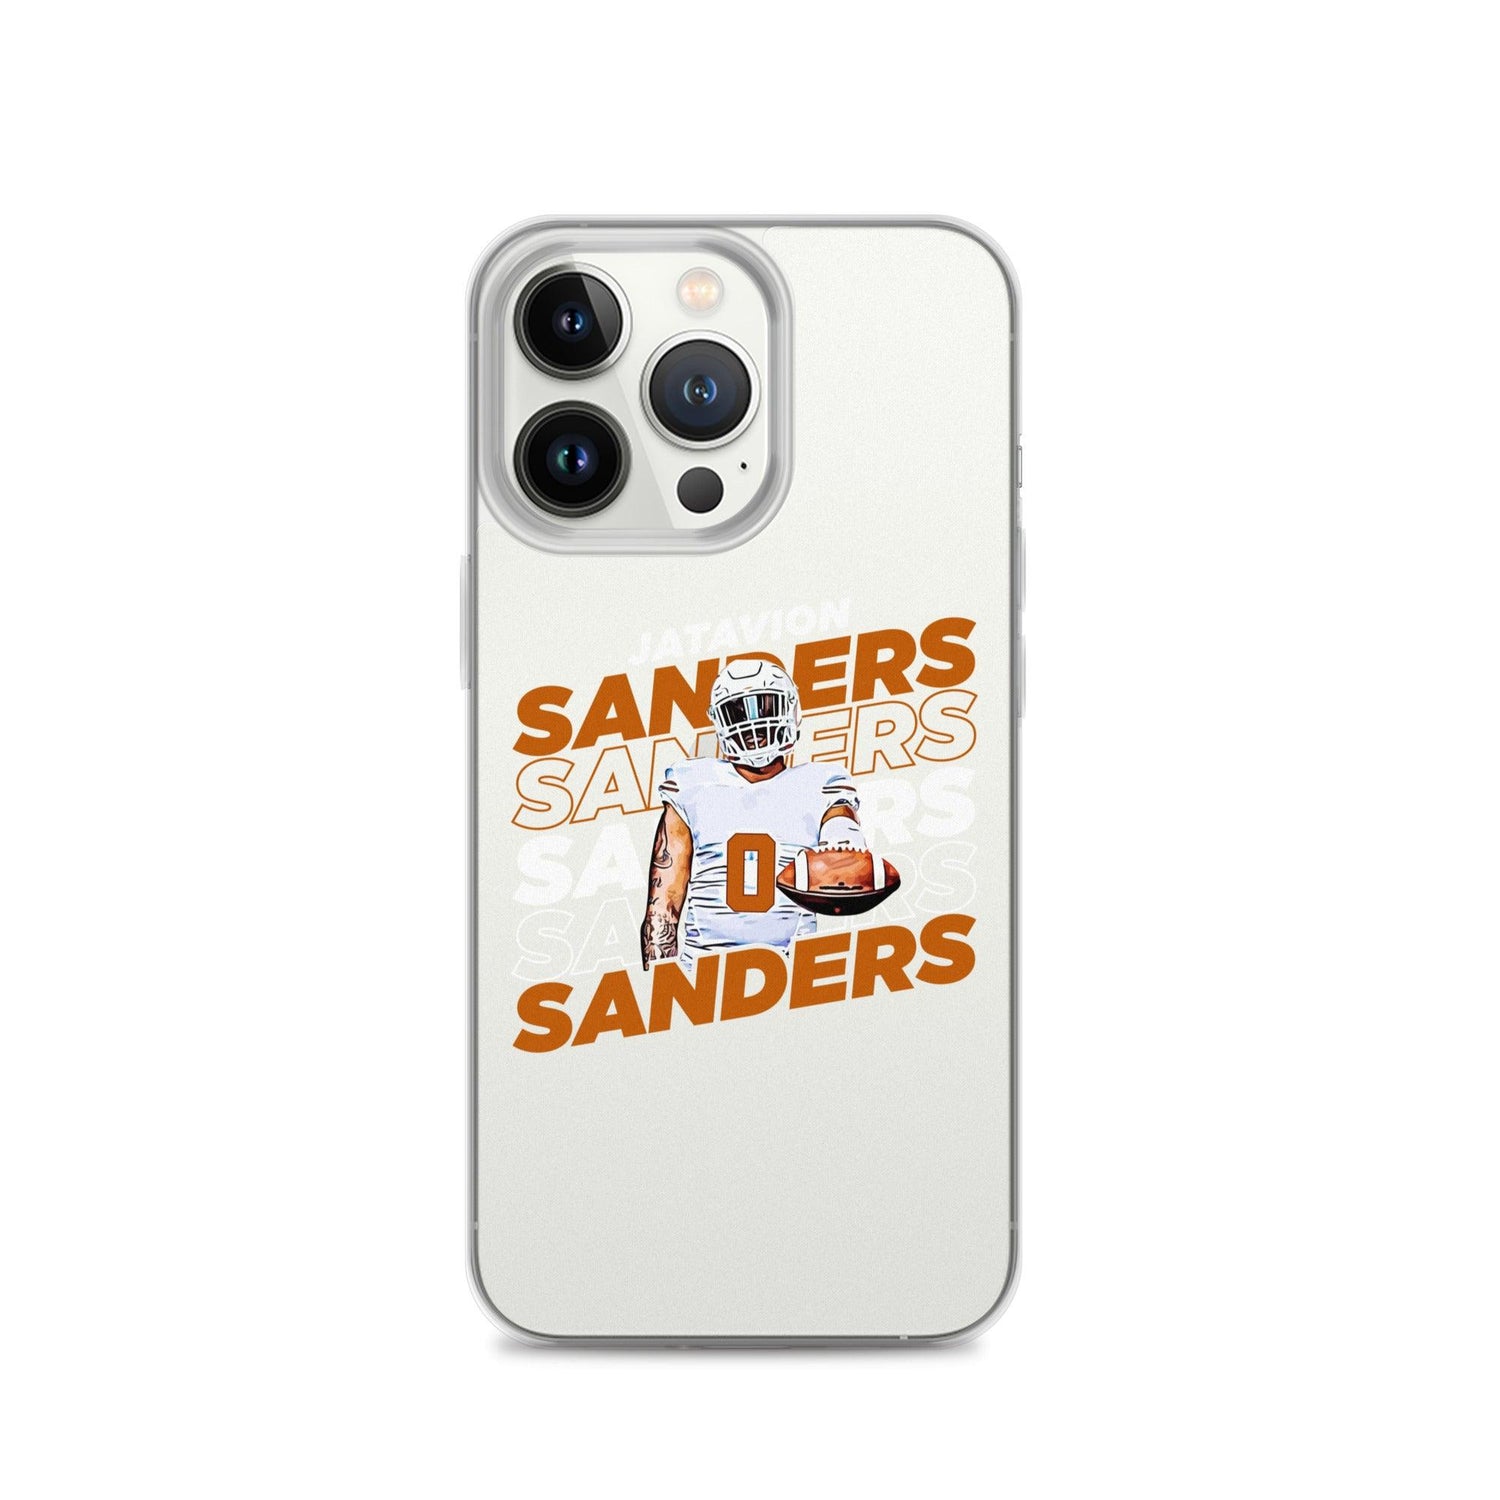 Jatavion Sanders "Repeat" iPhone Case - Fan Arch